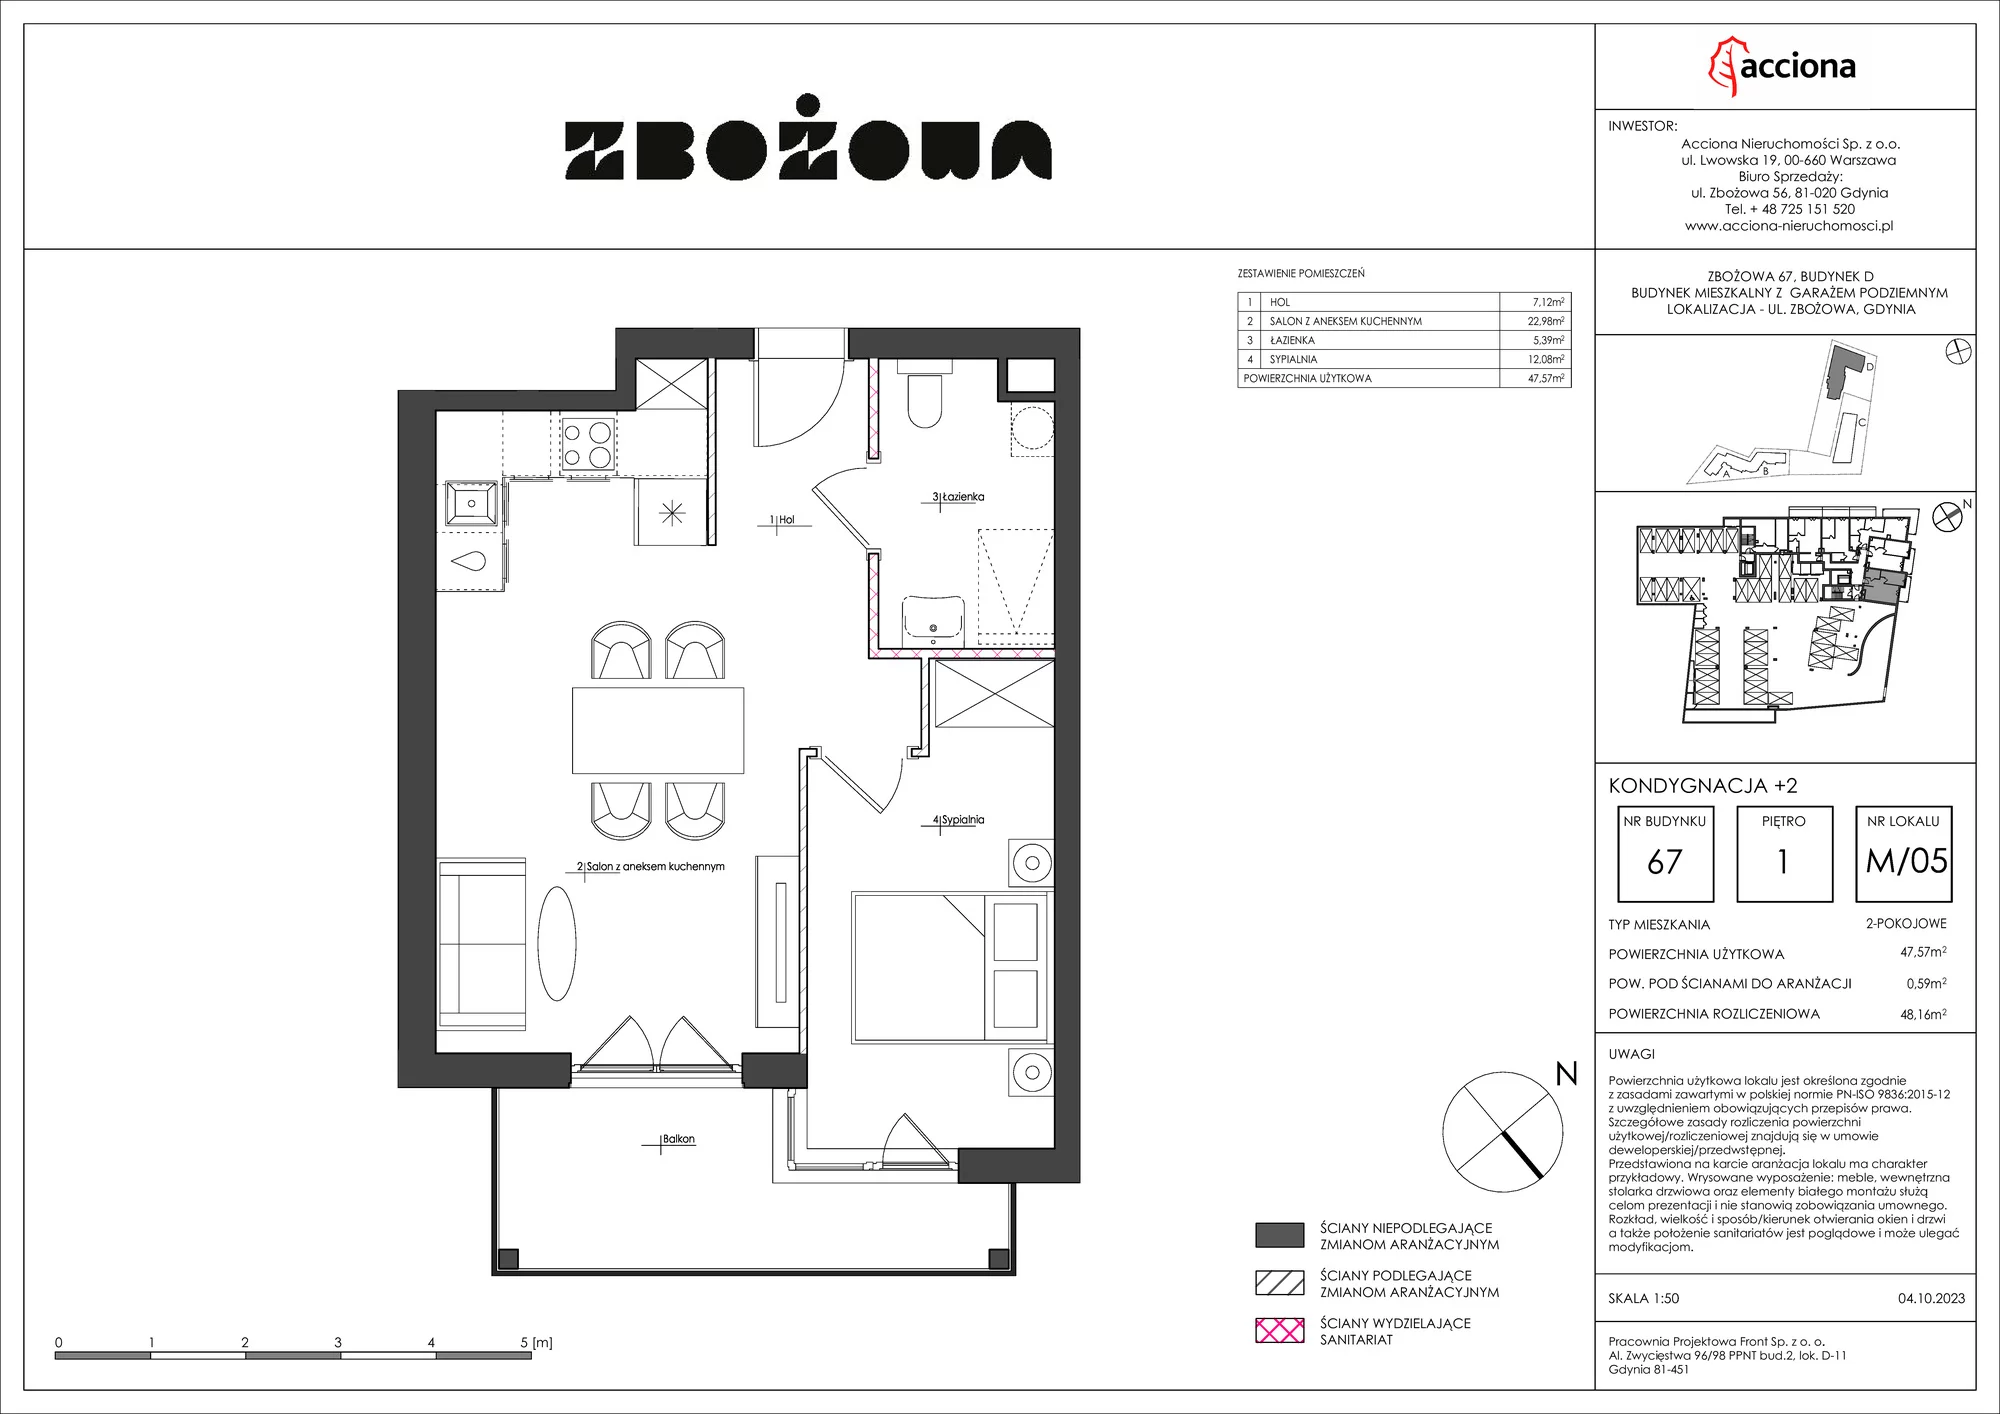 Mieszkanie 48,16 m², piętro 1, oferta nr 67.5, Zbożowa, Gdynia, Cisowa, ul. Zbożowa